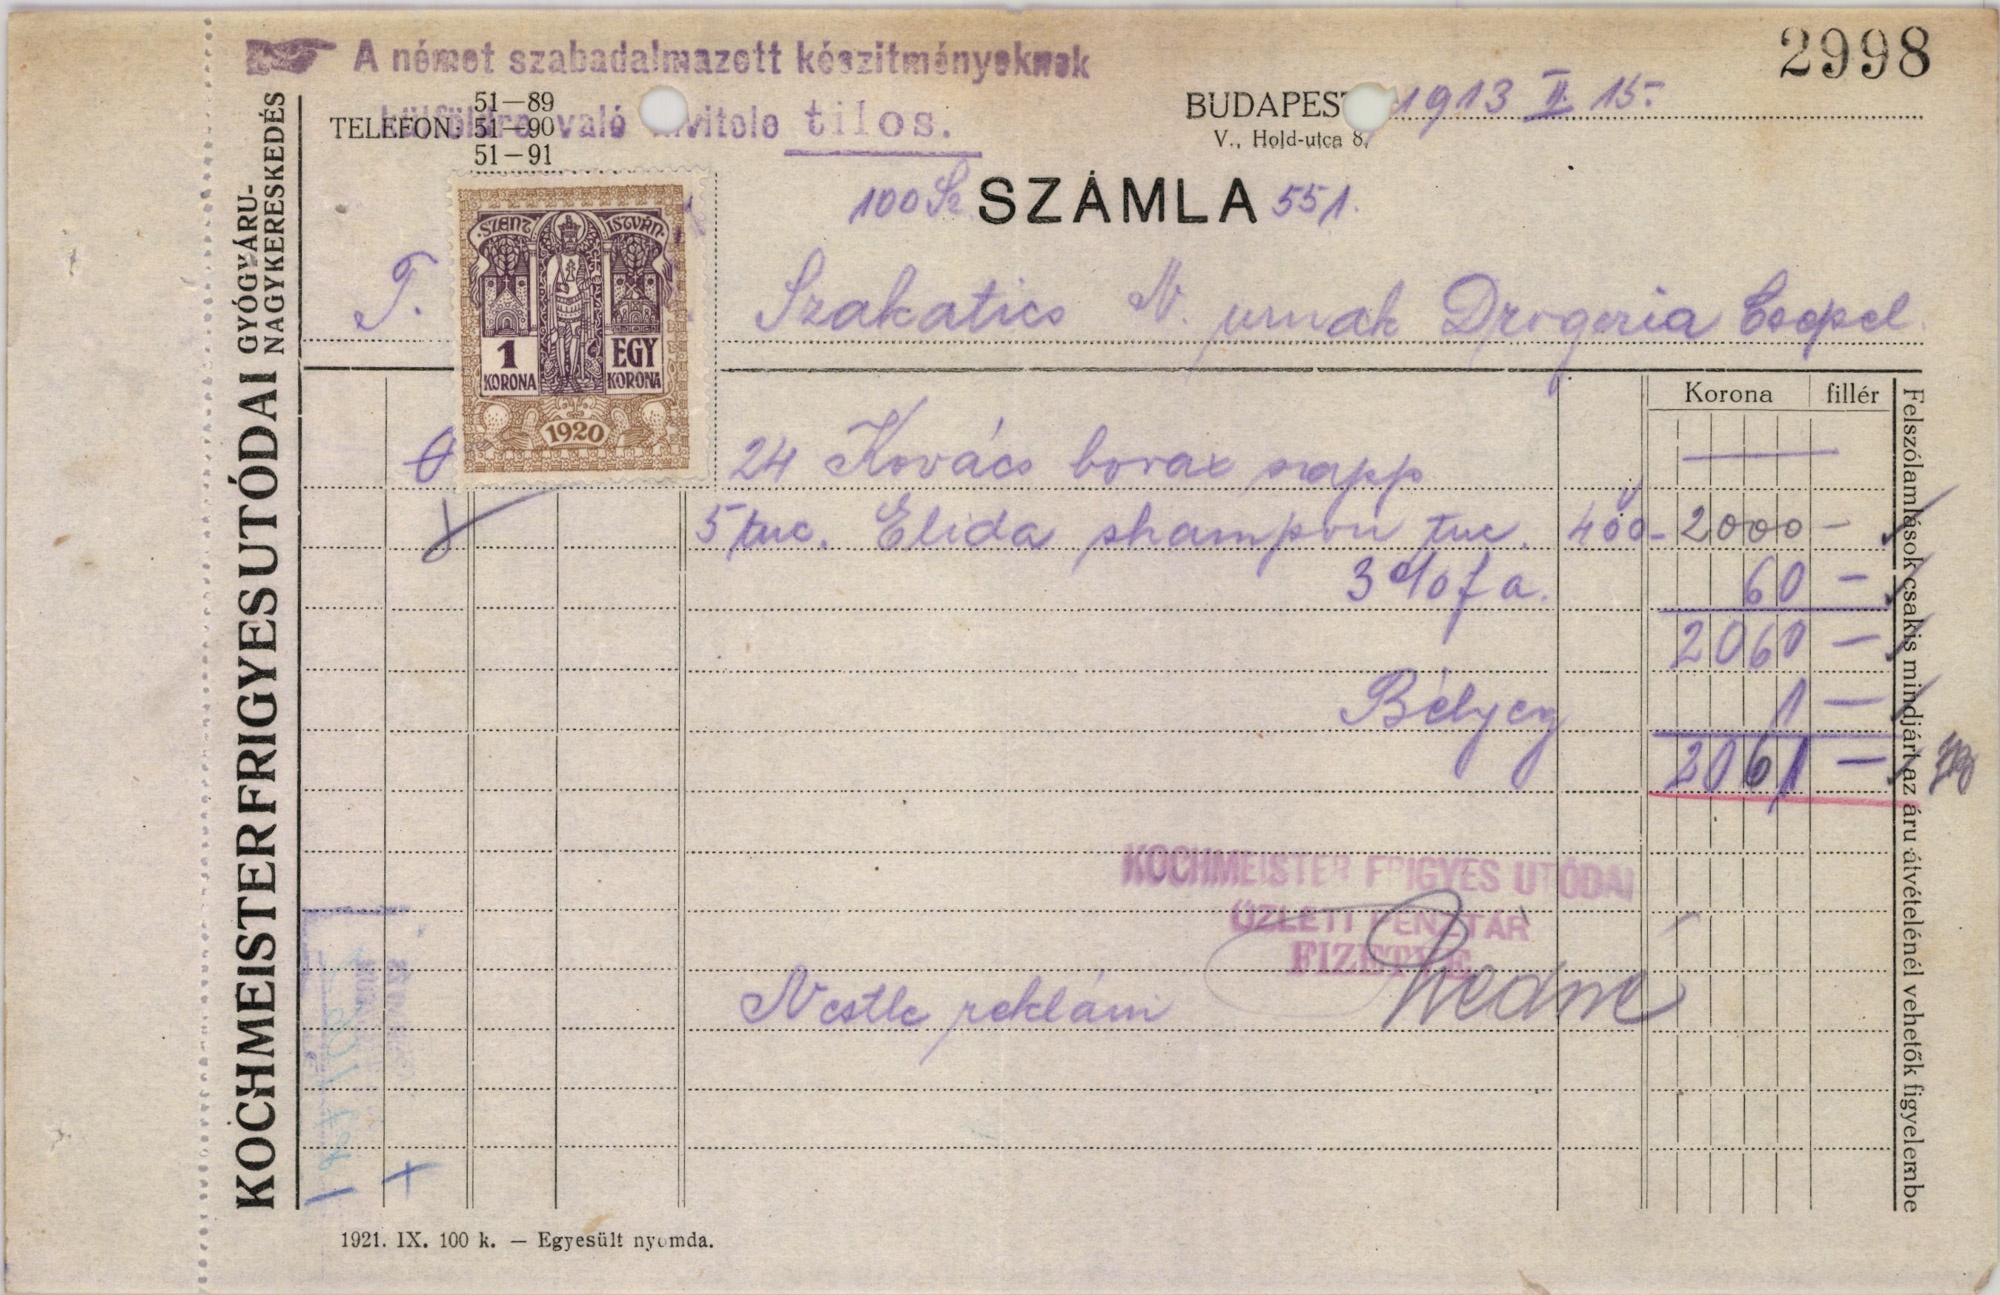 Kochmeister Frigyes utódai gyógyszerárunagykereskedés (Magyar Kereskedelmi és Vendéglátóipari Múzeum CC BY-NC-SA)